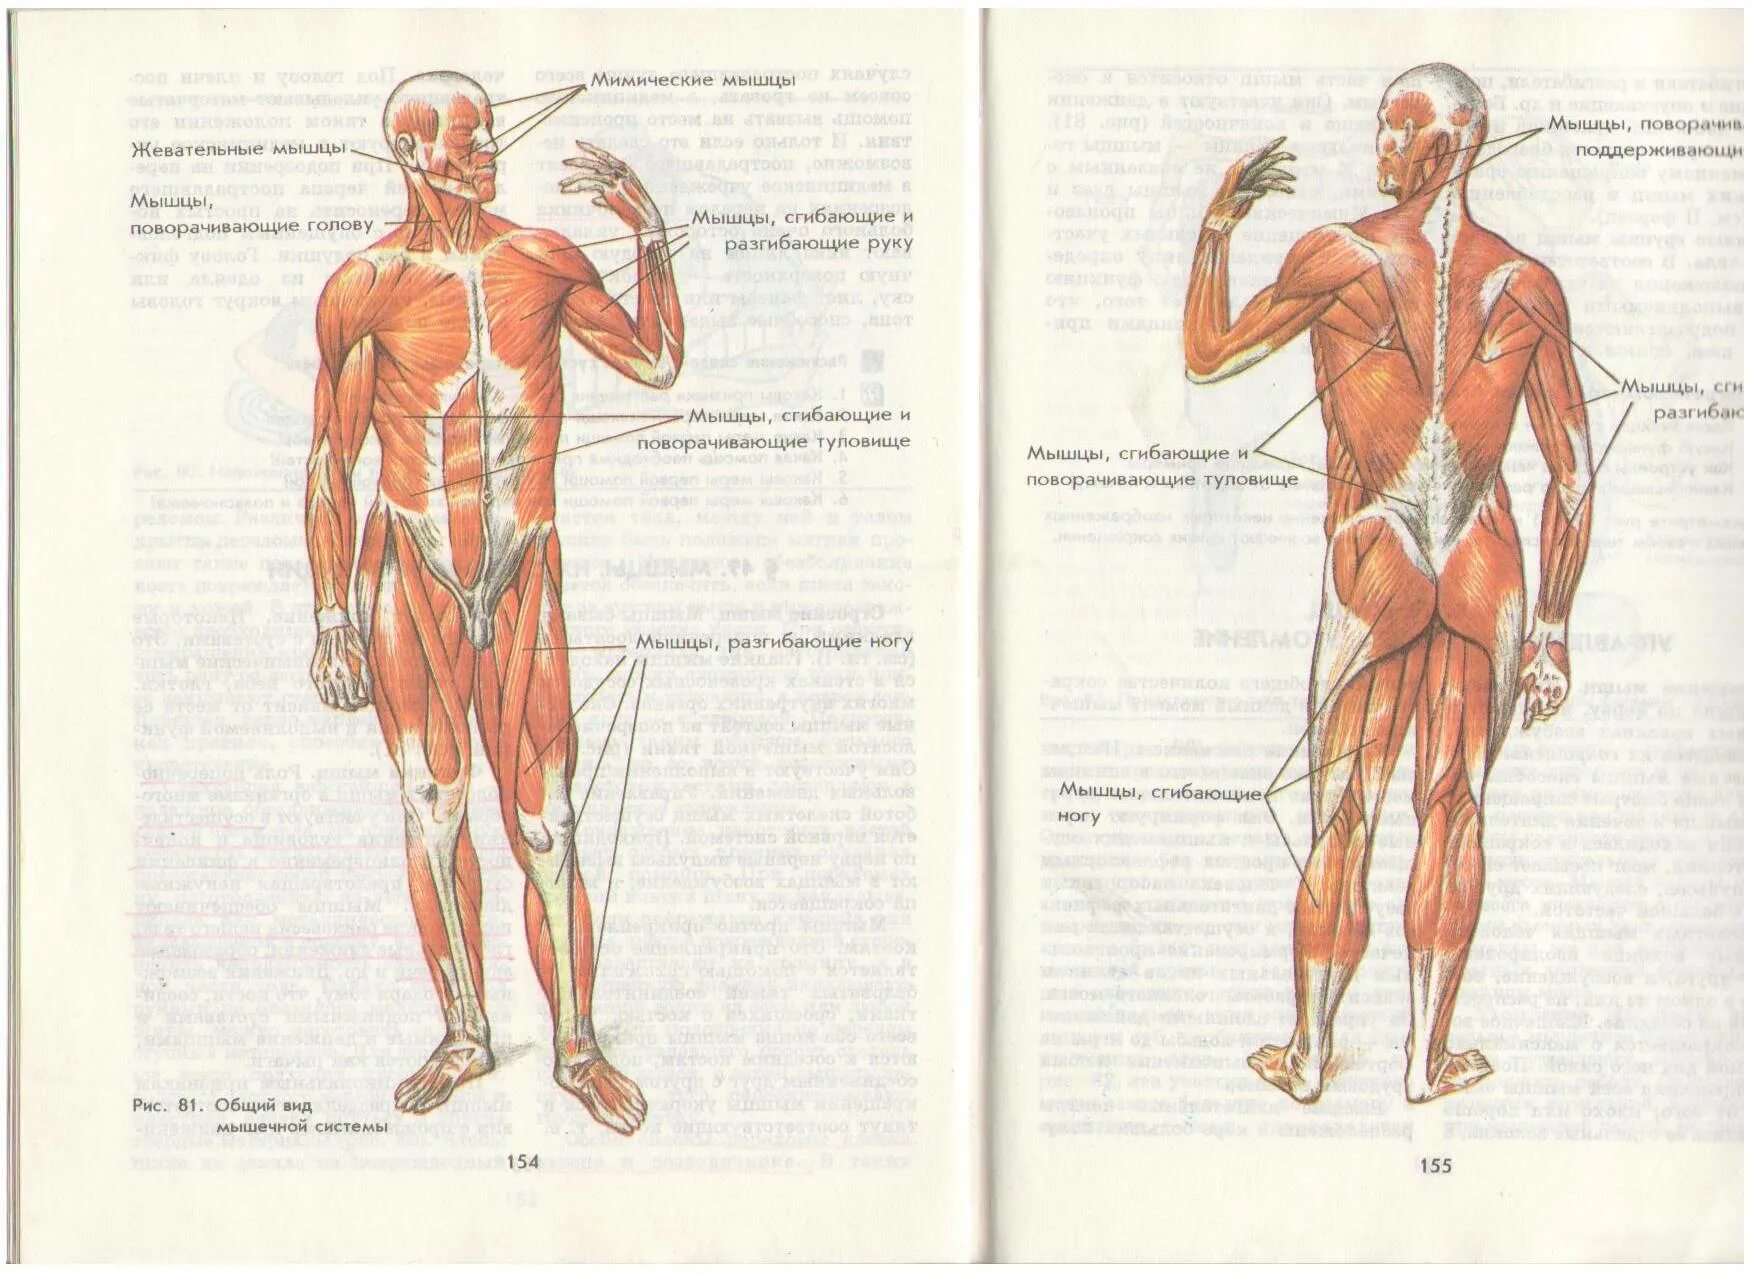 Мышцы человека 8 класс биология. Мышечный скелет человека с названиями мышц. Мышцы тела человека 8 класс биология Пасечник. Мышцы туловища и конечностей 8 класс биология.